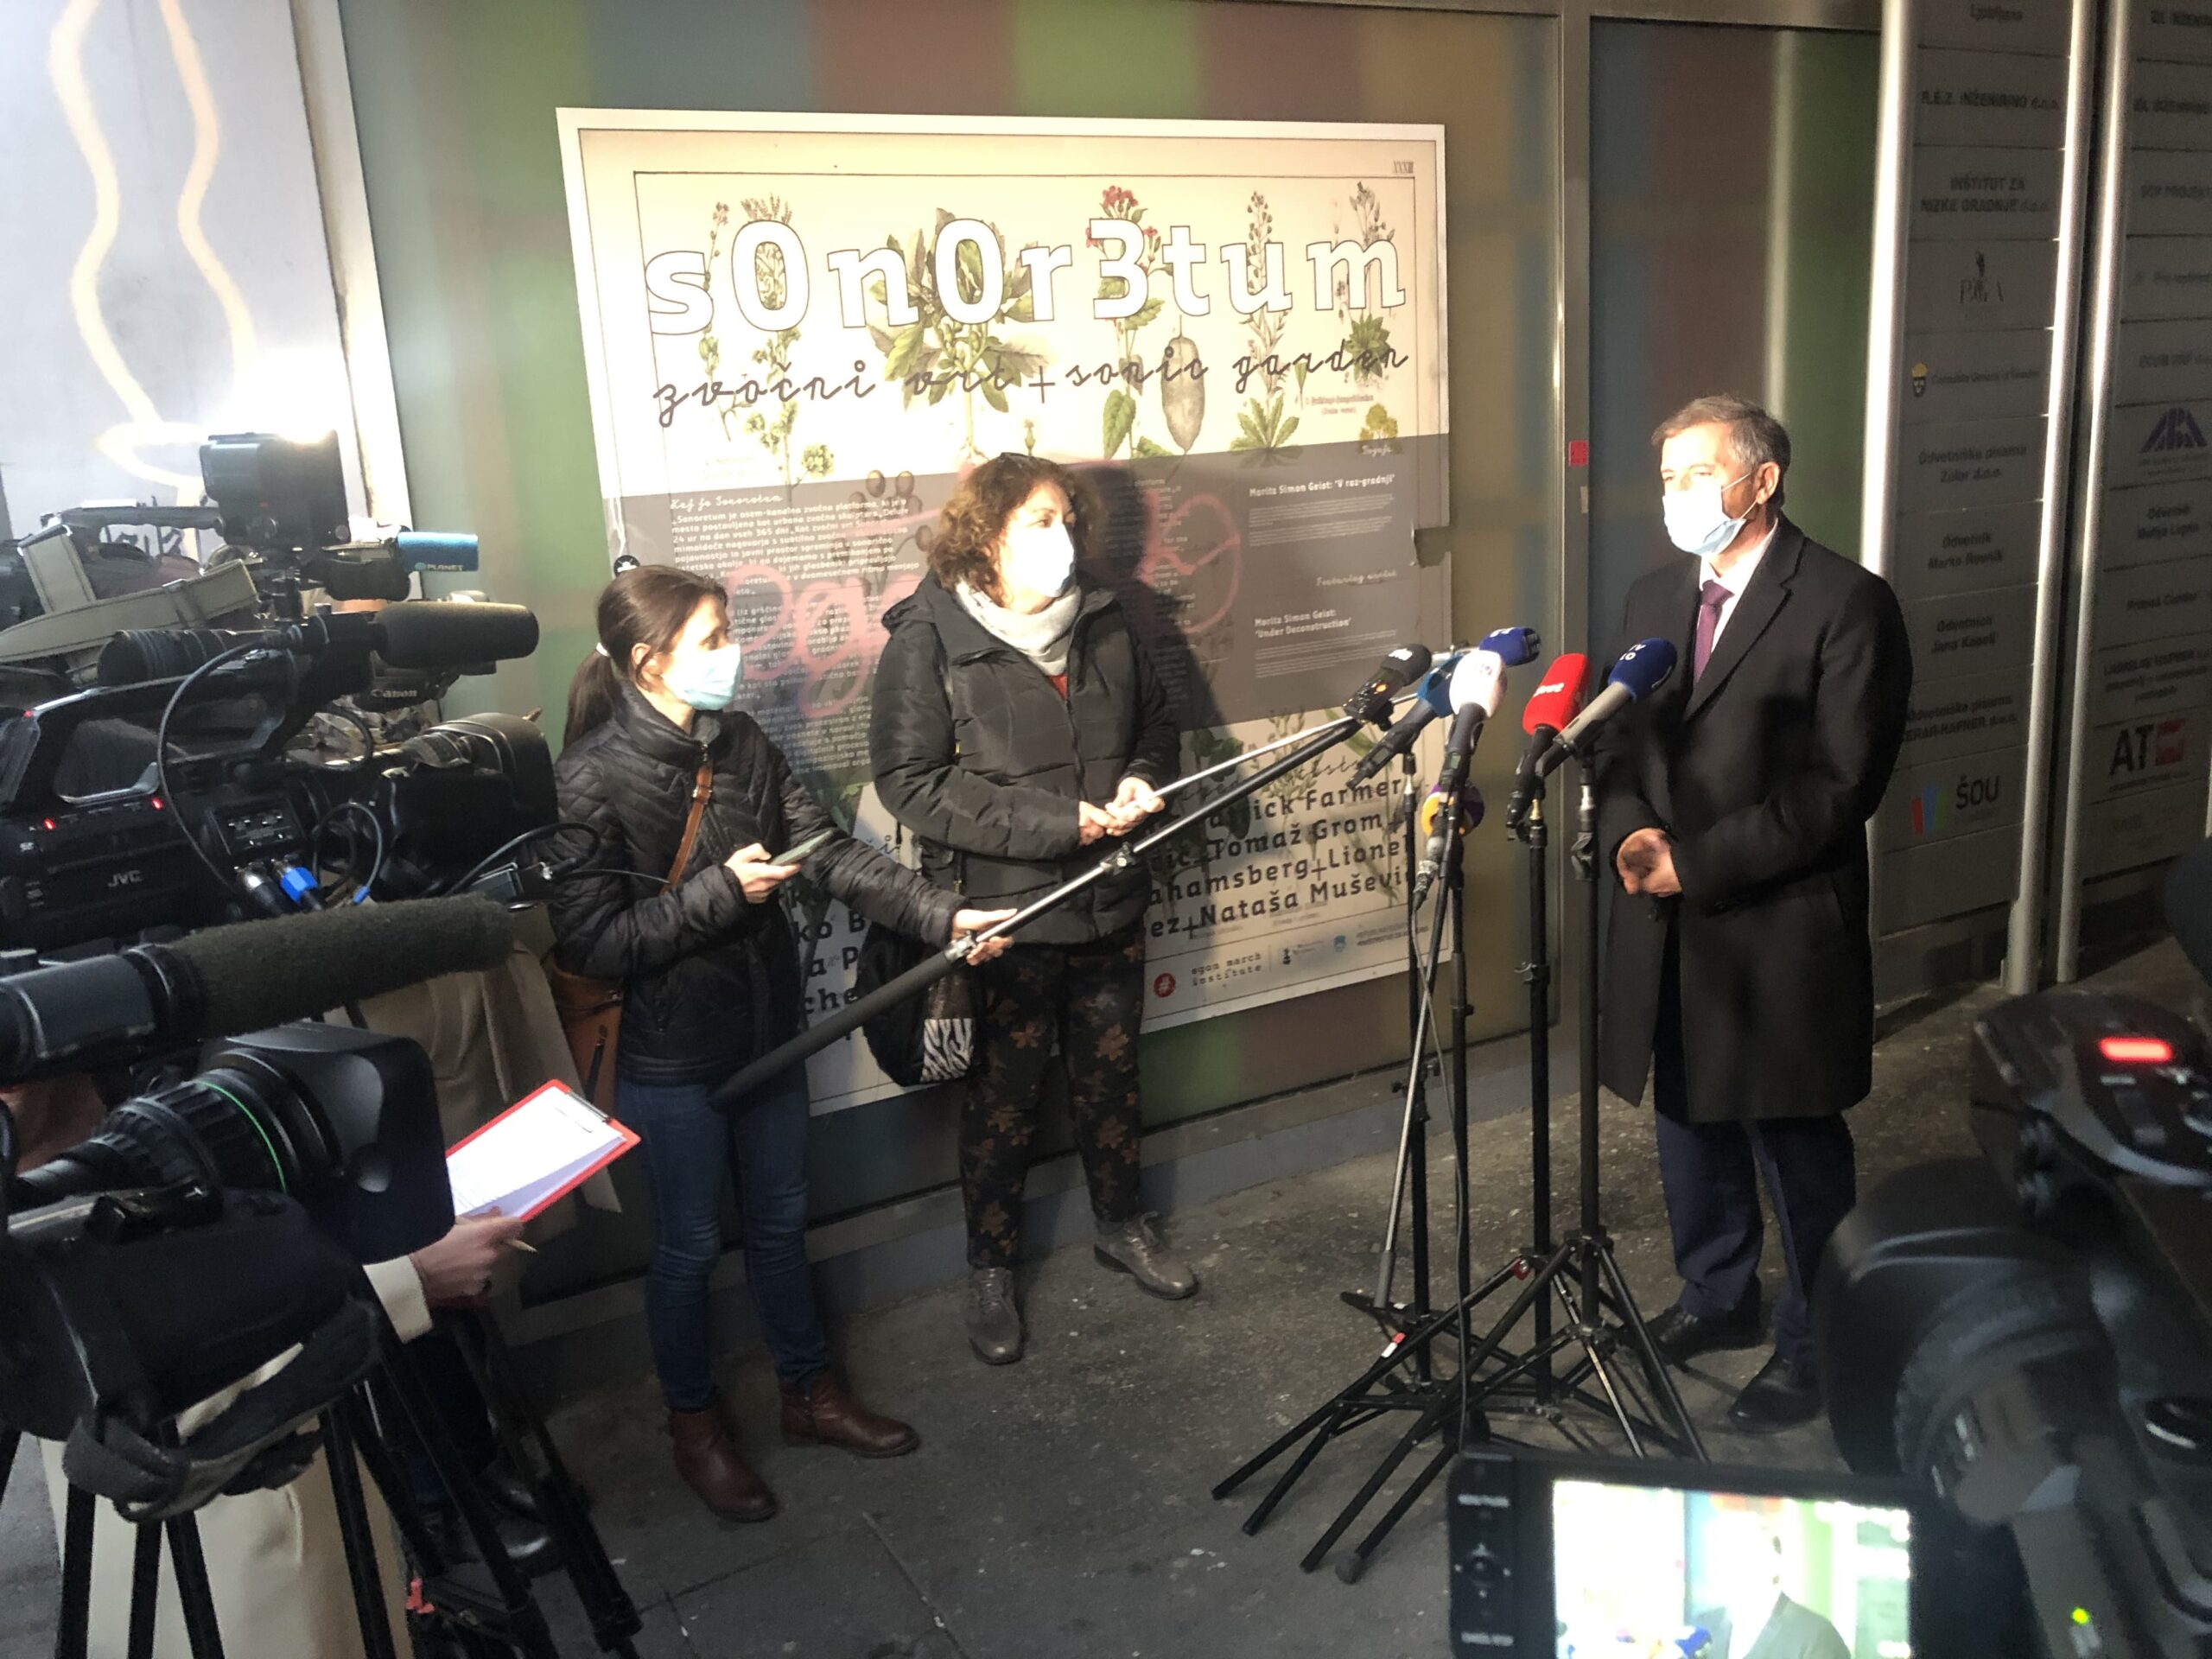 (VIDEO) Karl Erjavec: “Odločili smo se, da bomo zmerna opozicija” – DeSUS ne bo članica KUL-a in ne bo podpisala sporazuma z vlado